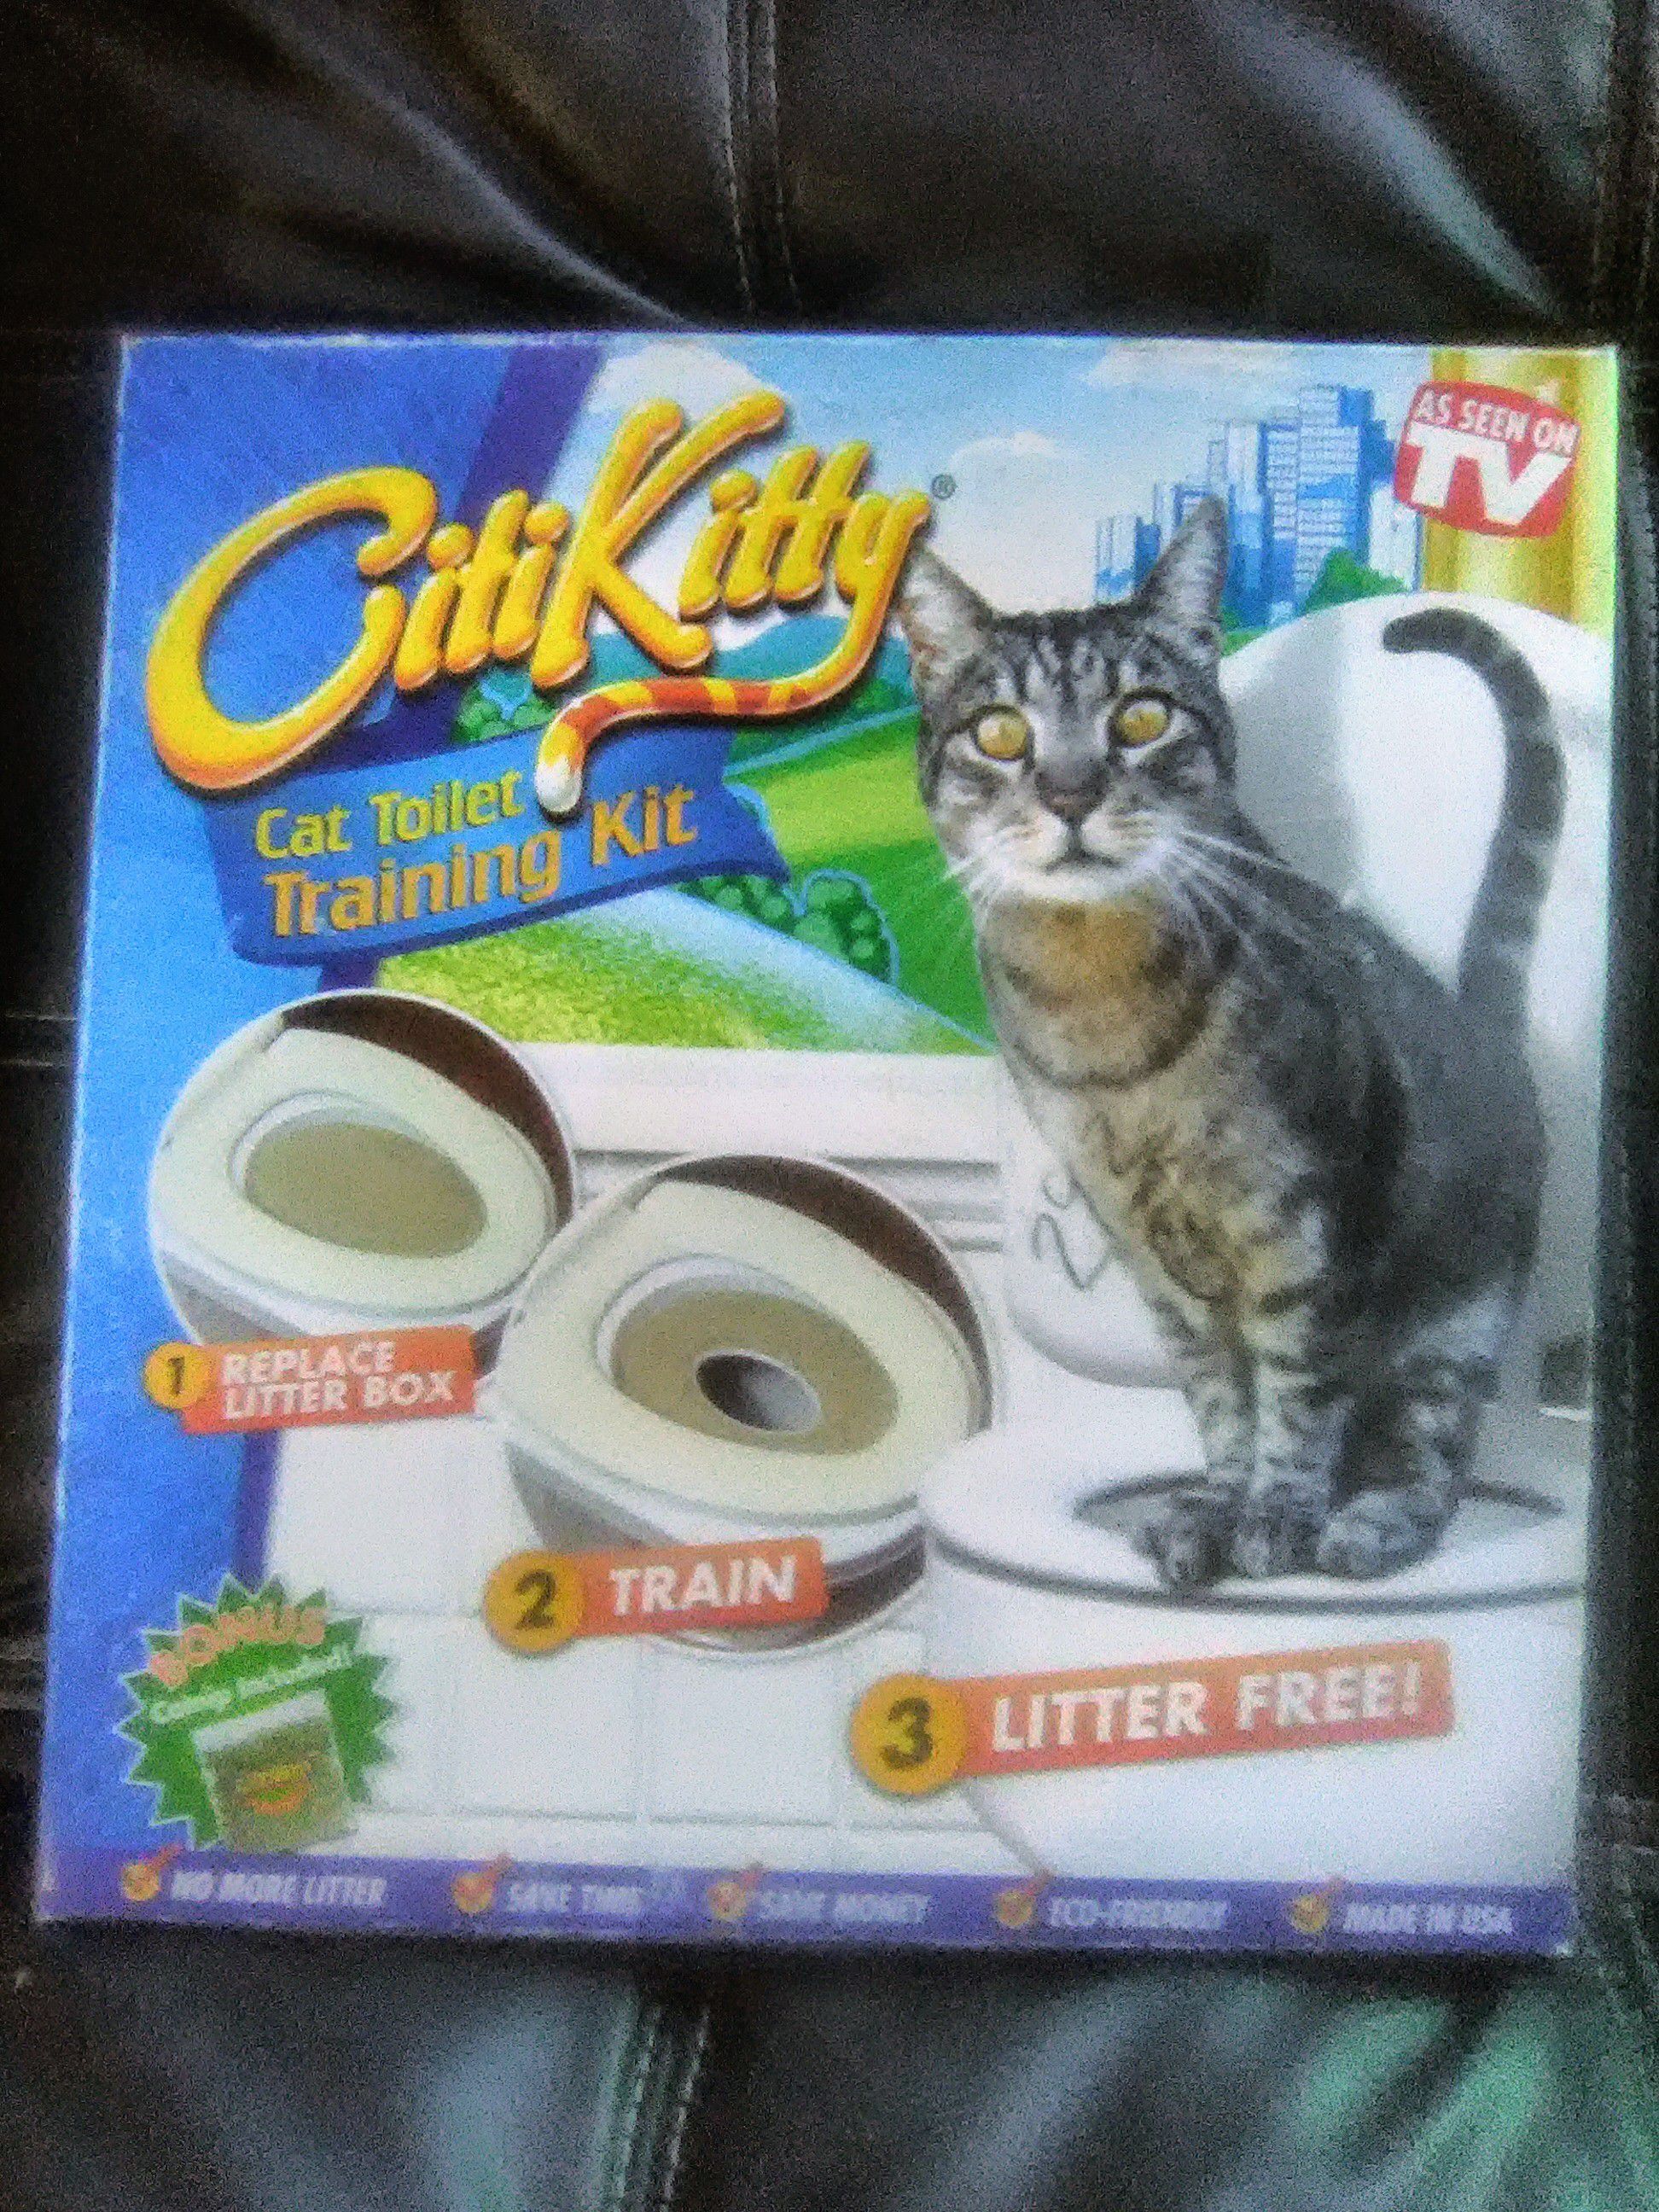 Citi Kitty Toilet Training Kit for Cats